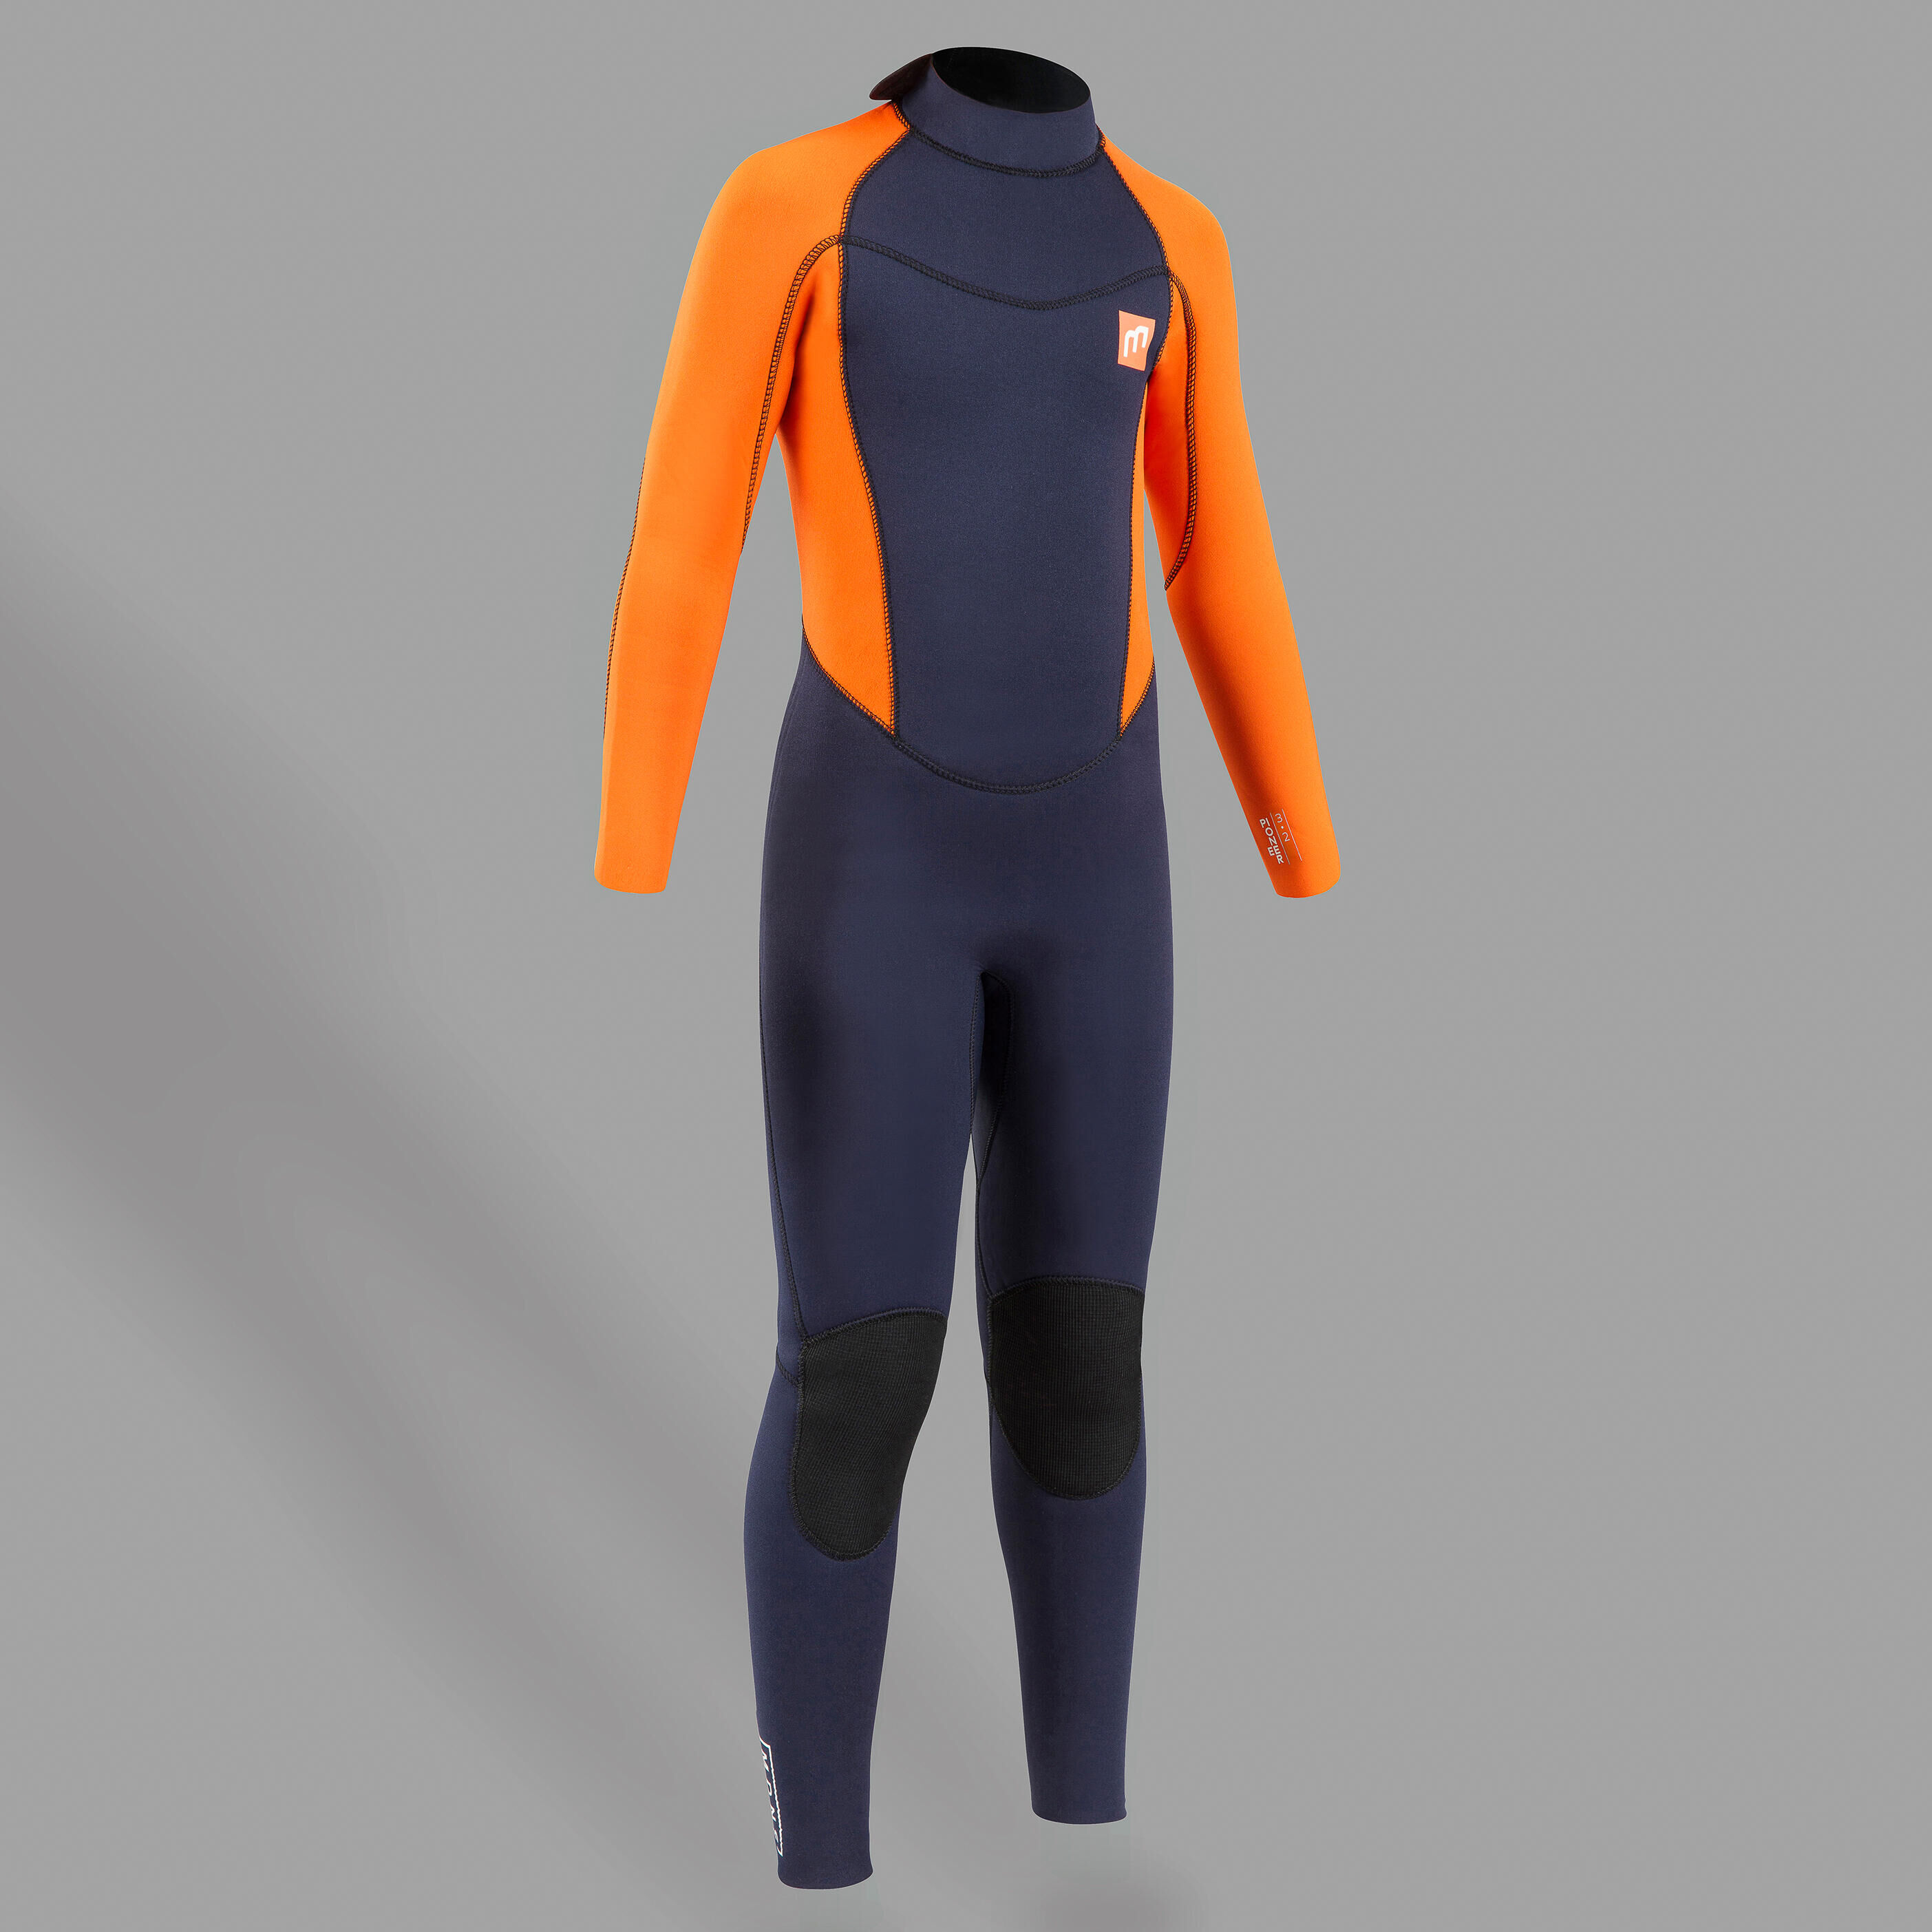 Mistral Full Suit Wetsuit 3/2 Men - CONFIG